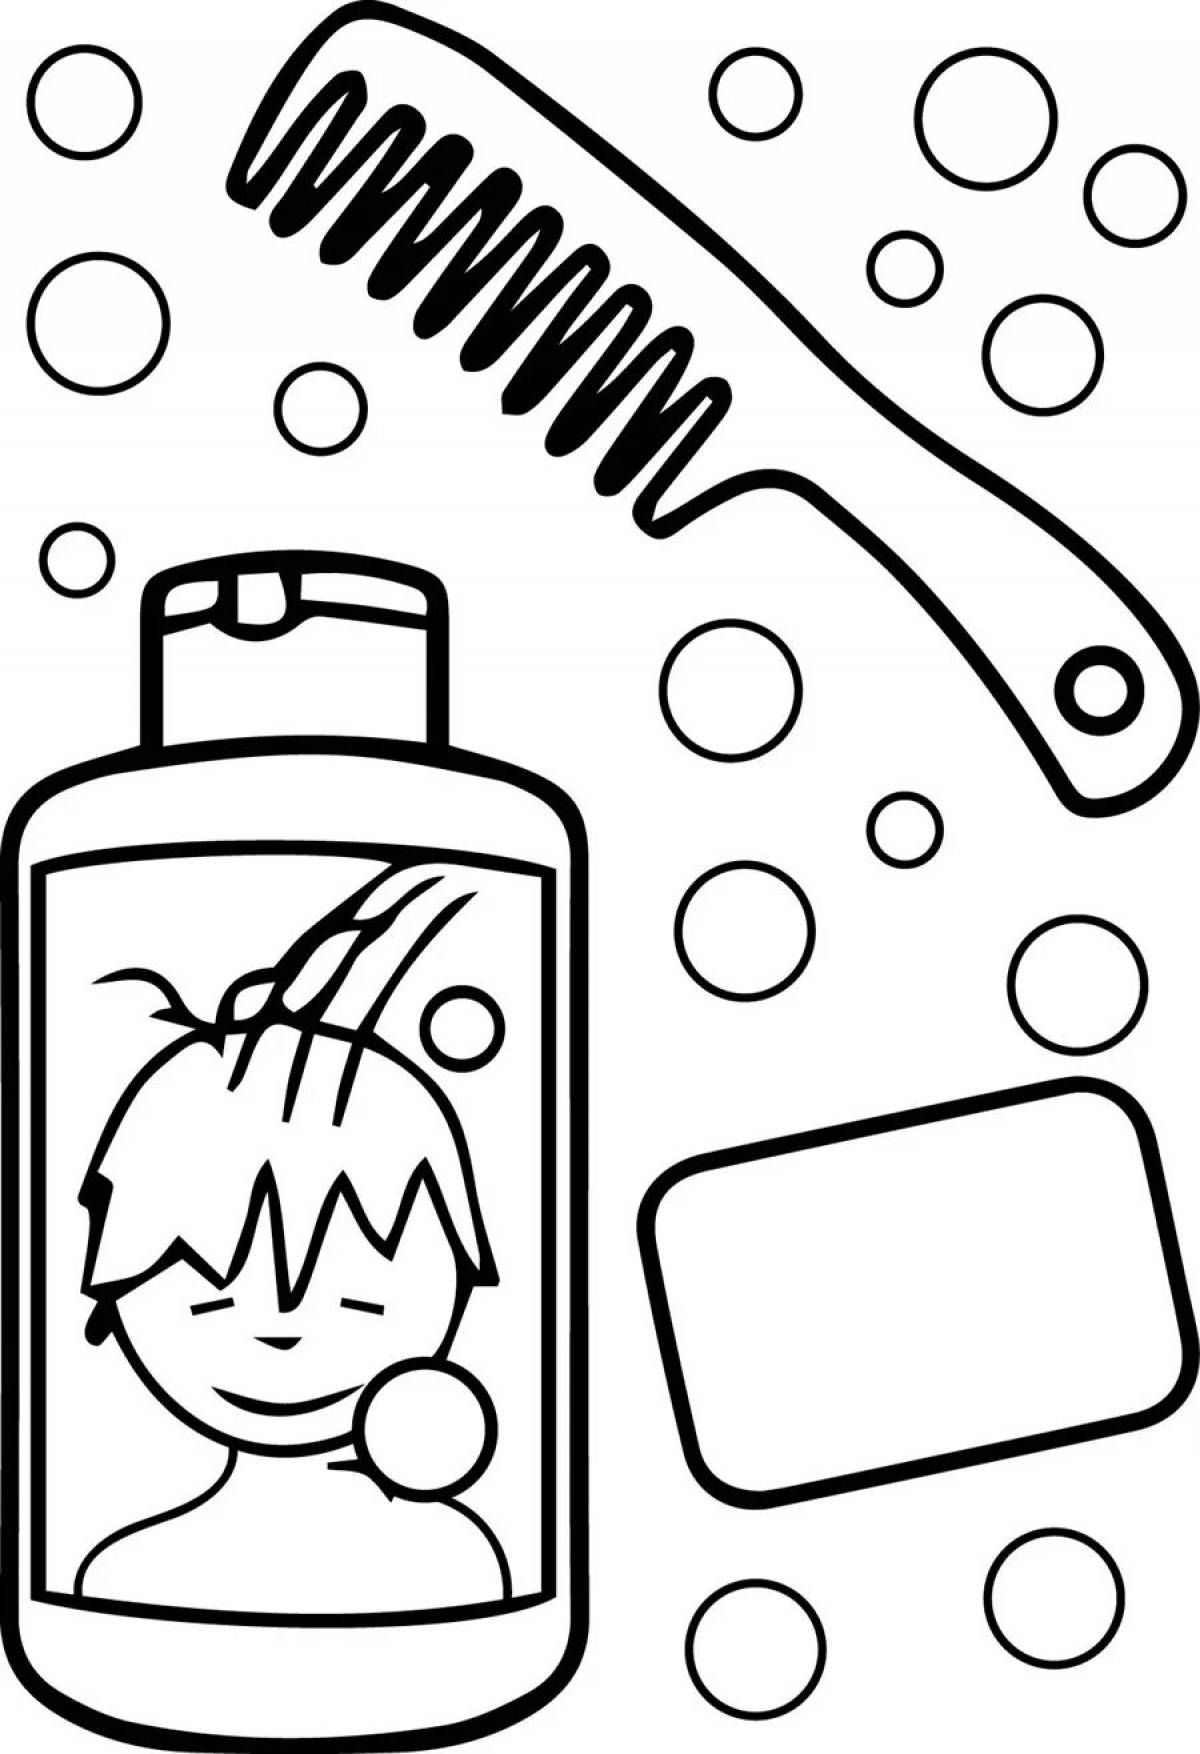 Hygiene items for children #3